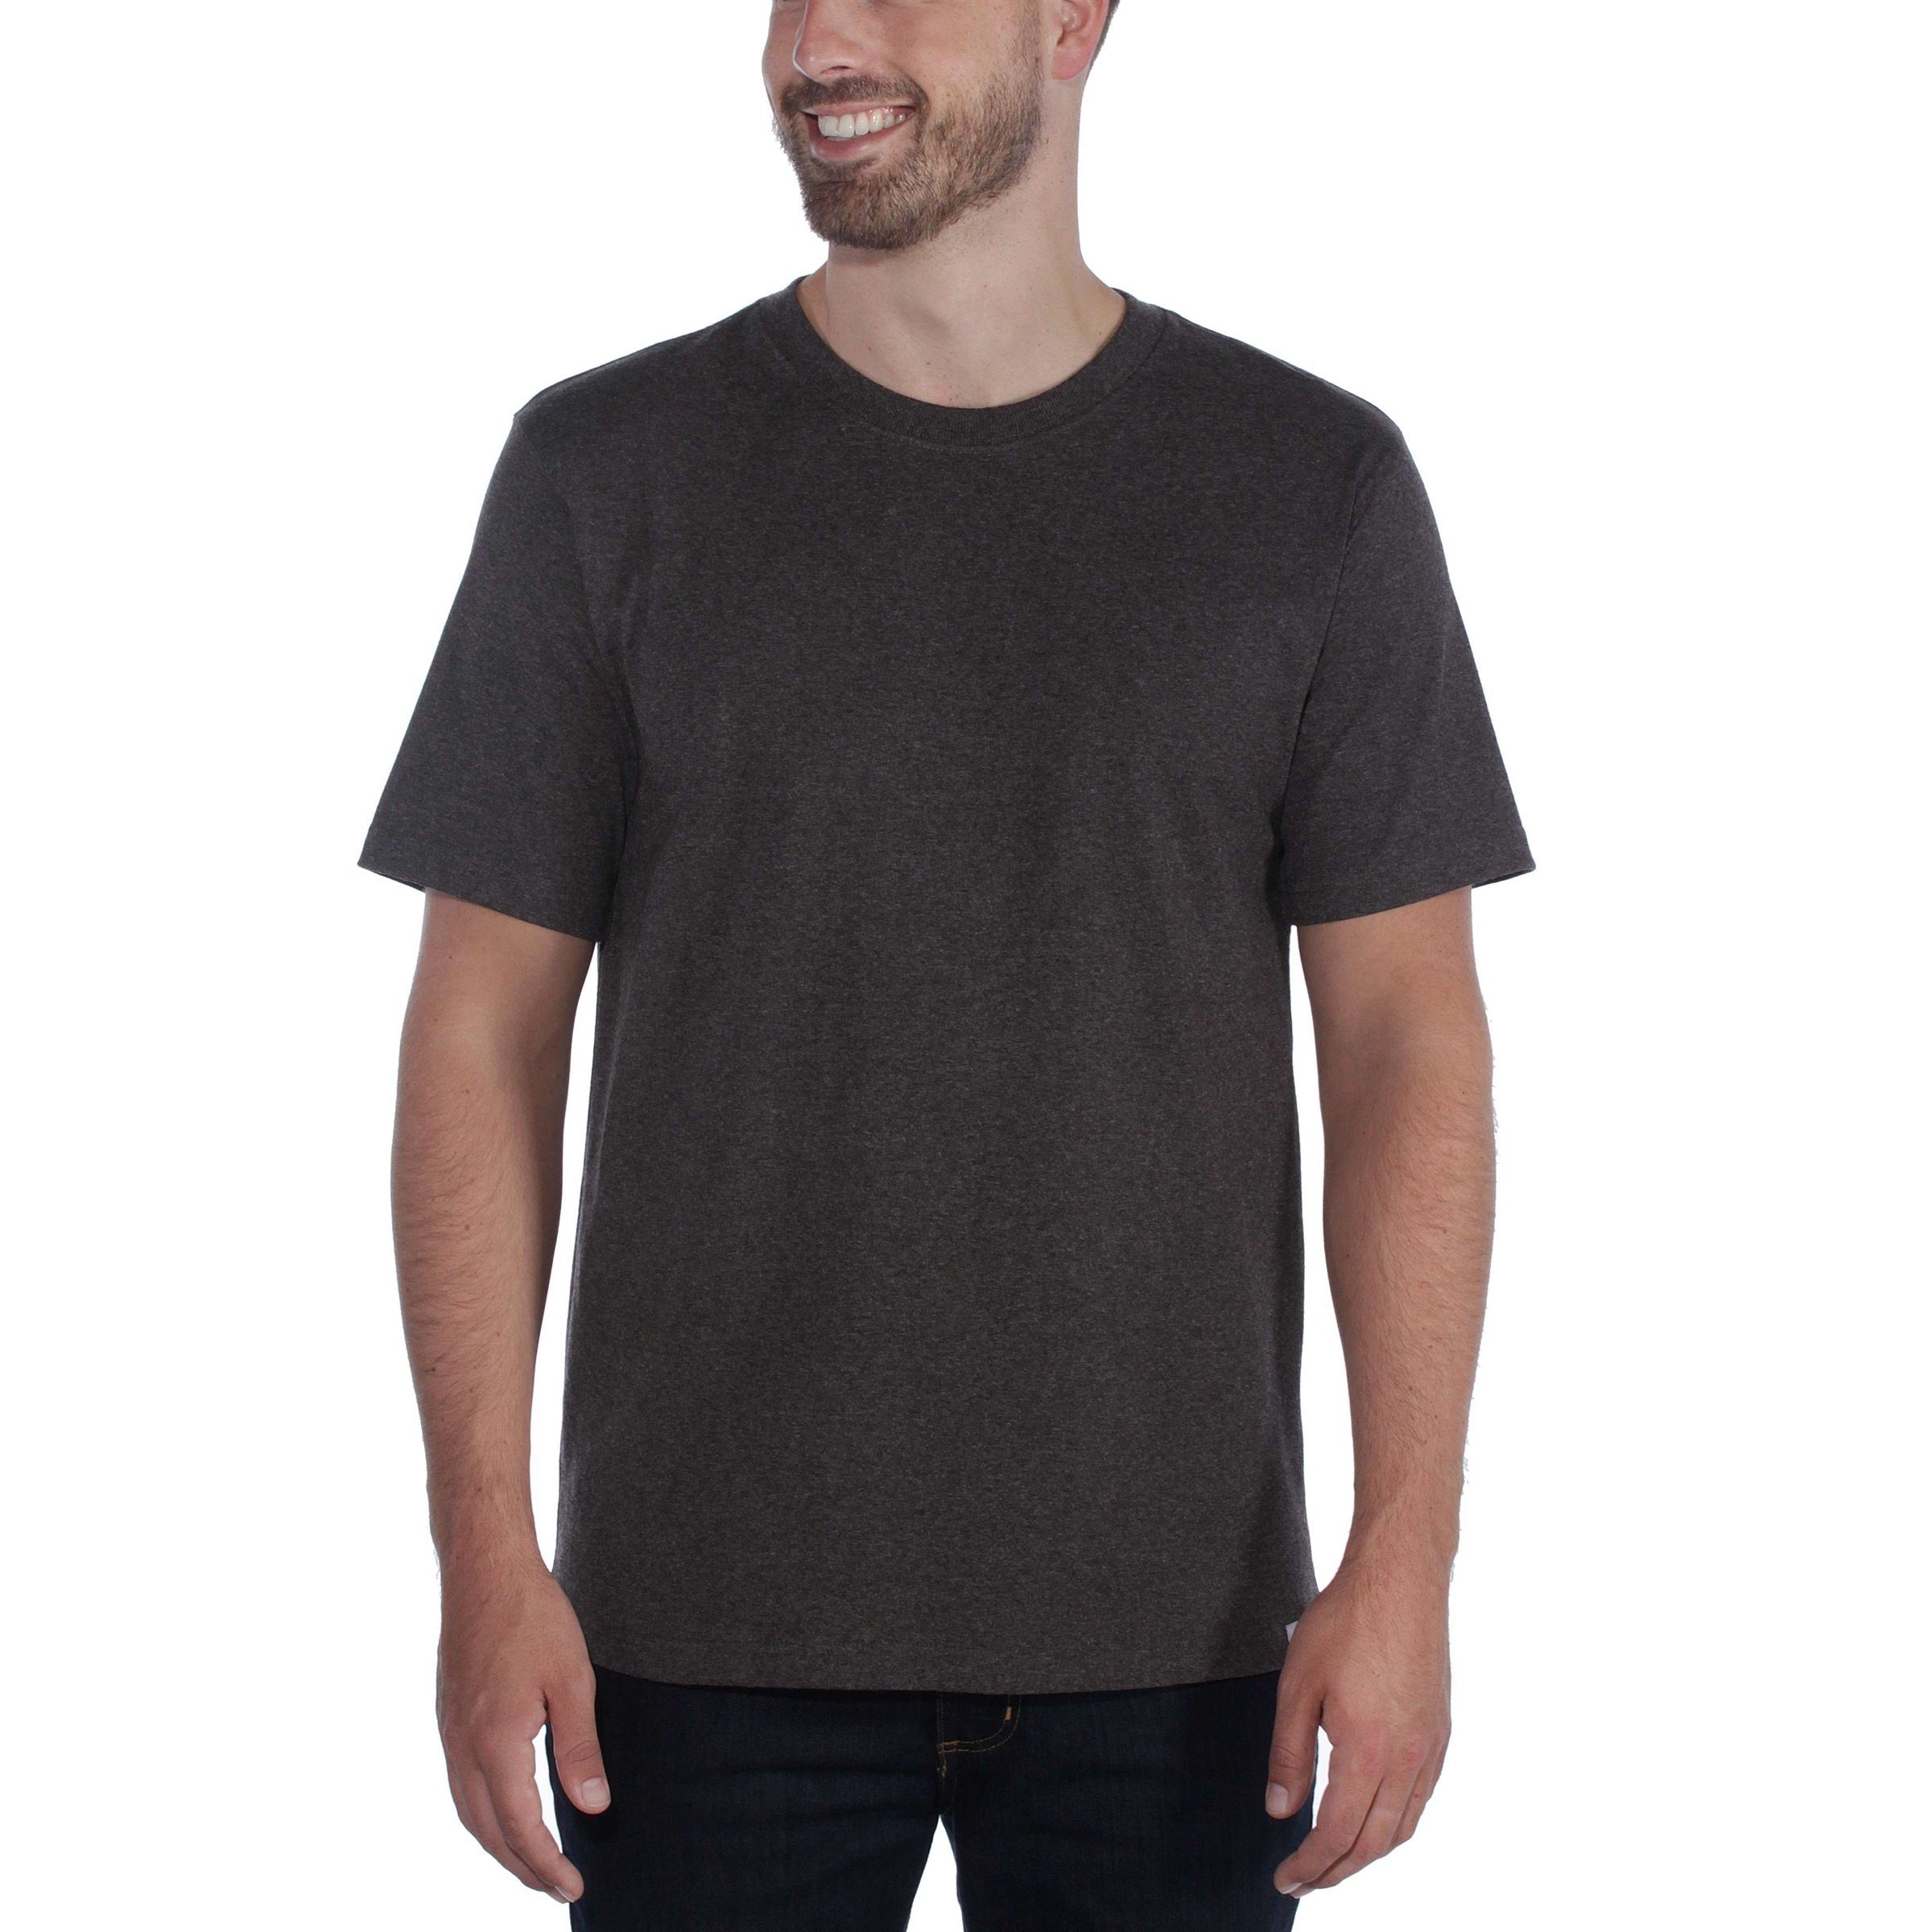 T-Shirt Relaxed Short-Sleeve Heavyweight Carhartt Adult navy Carhartt Herren T-Shirt Fit